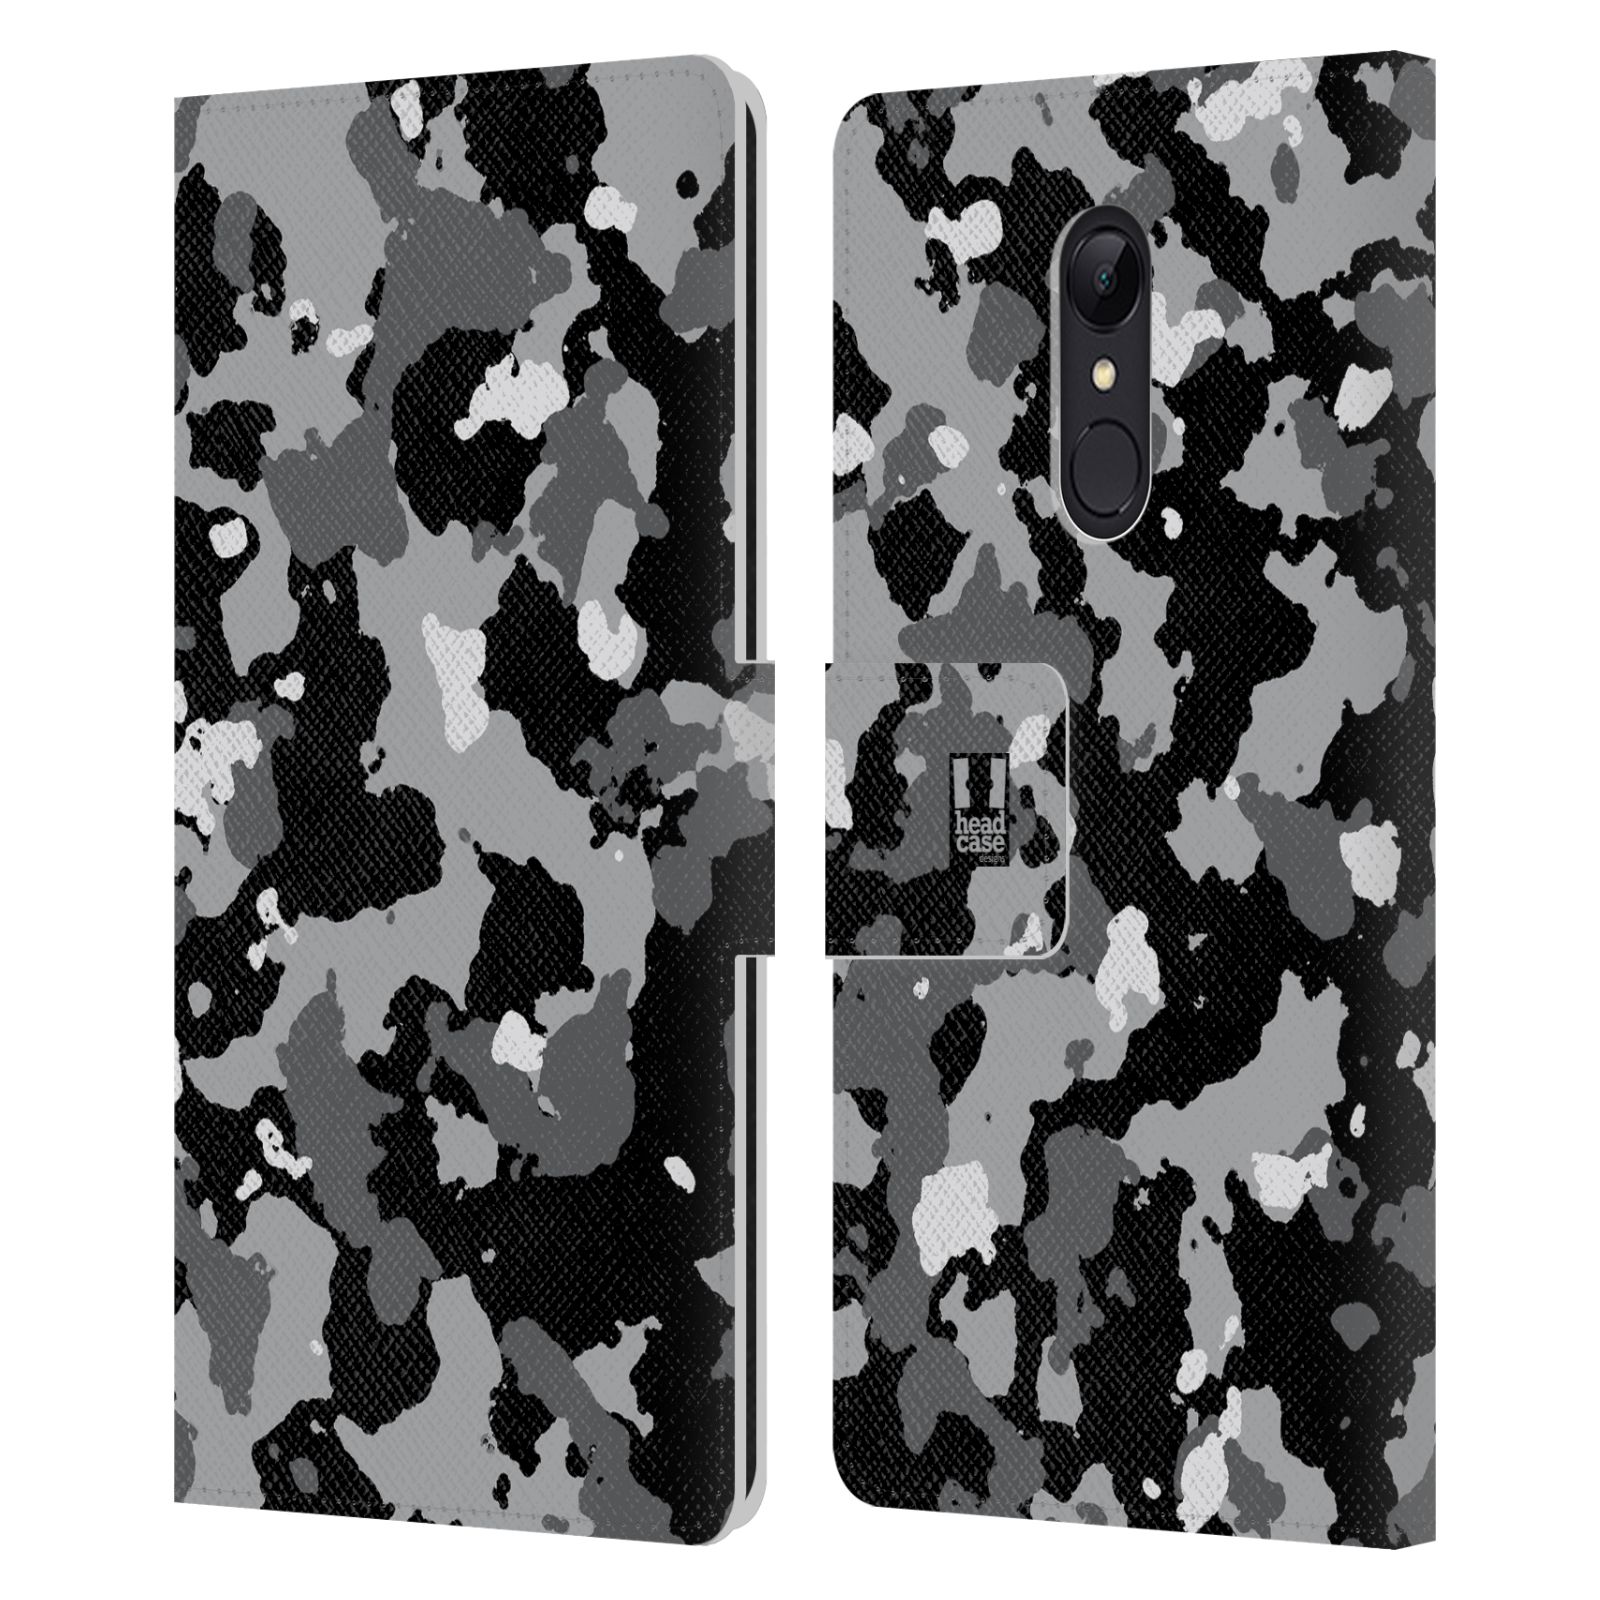 Pouzdro na mobil Xiaomi Redmi 5 - Head Case - kamuflaž černá a šedá